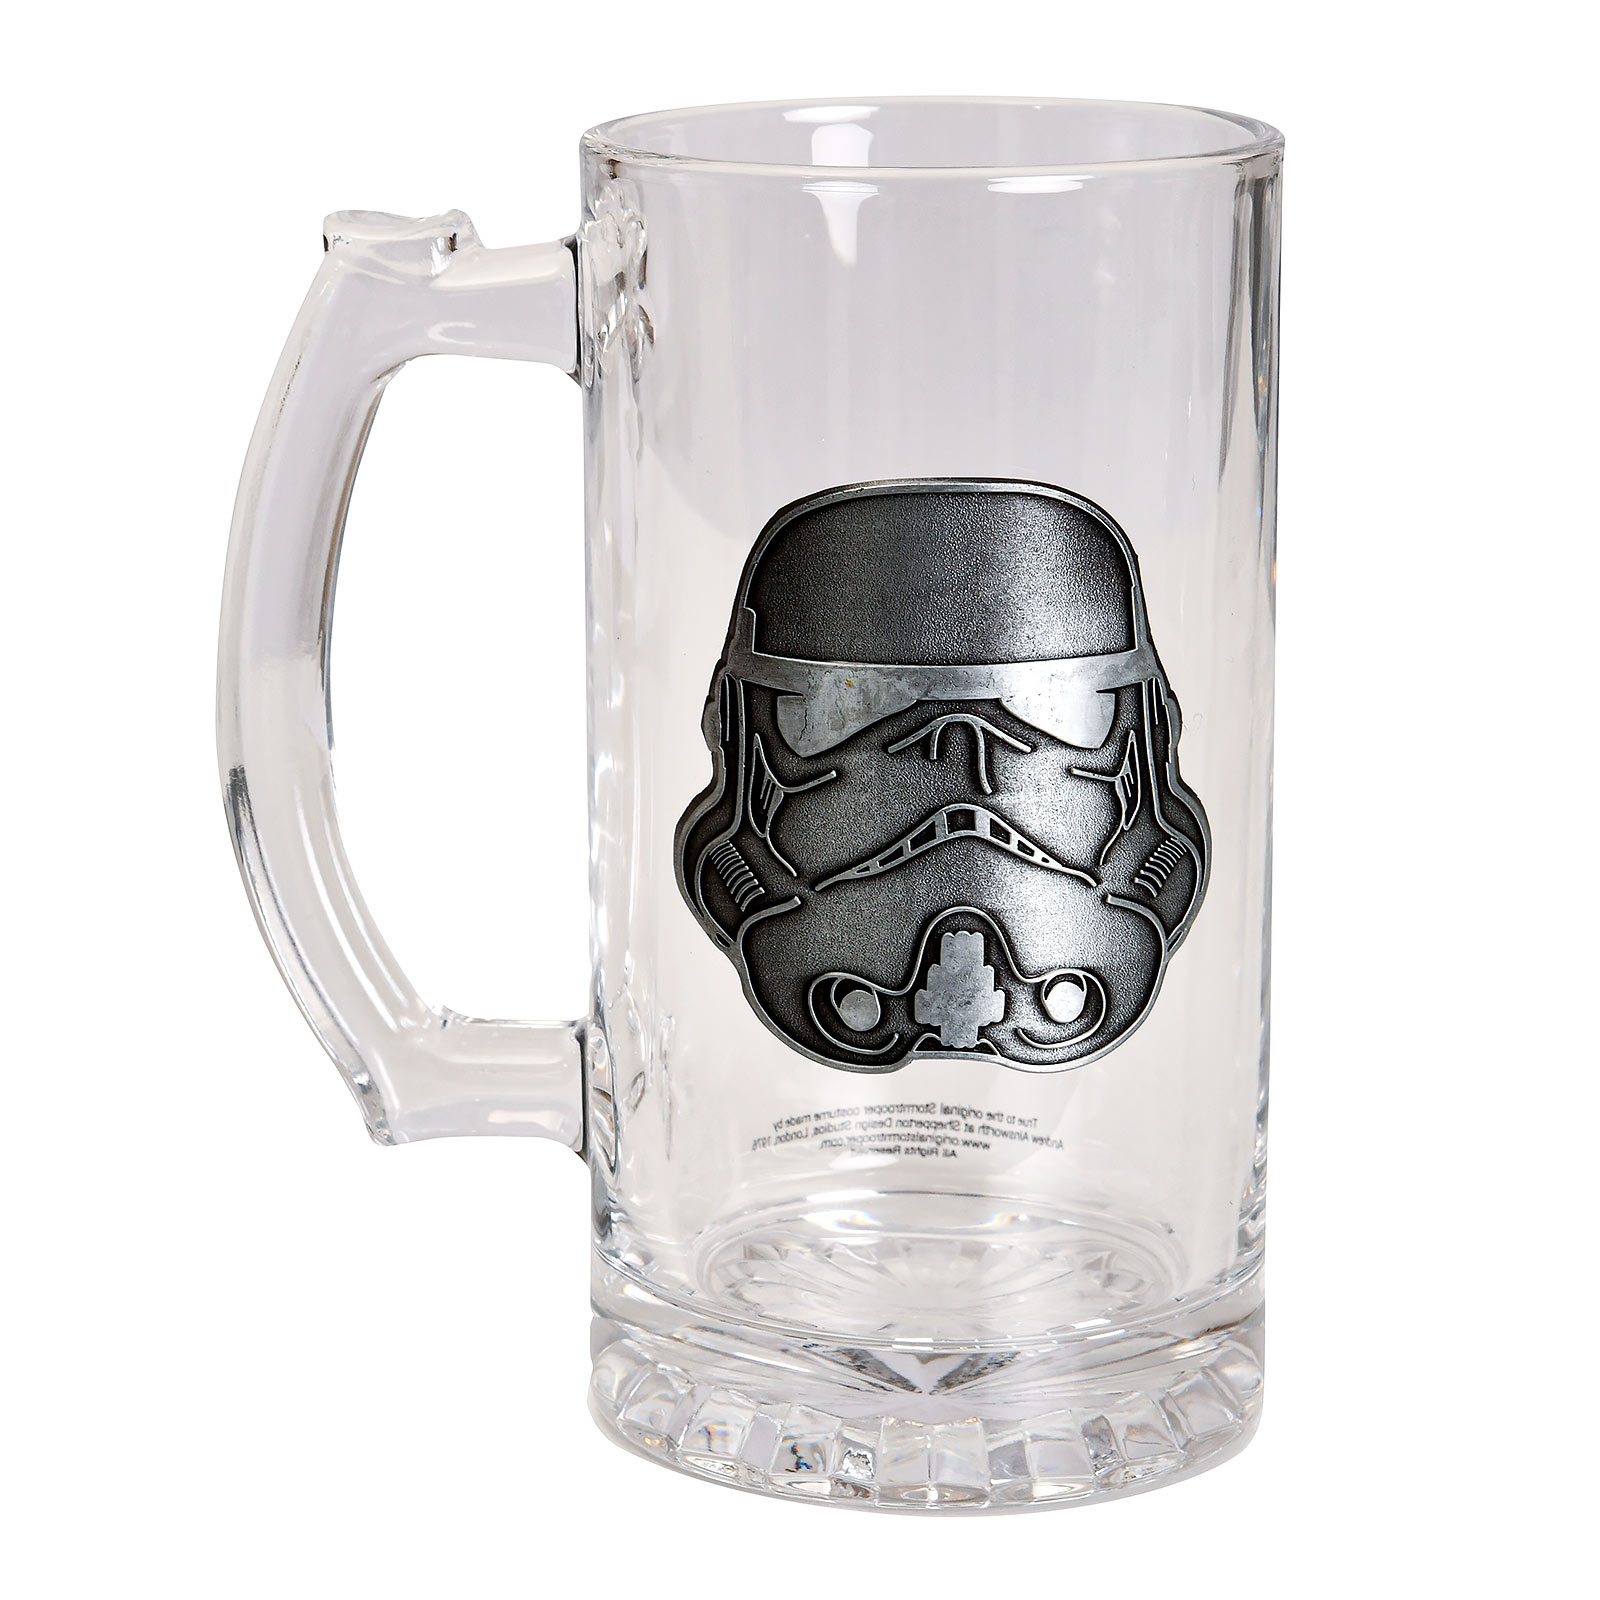 Original Stormtrooper Glass Mug